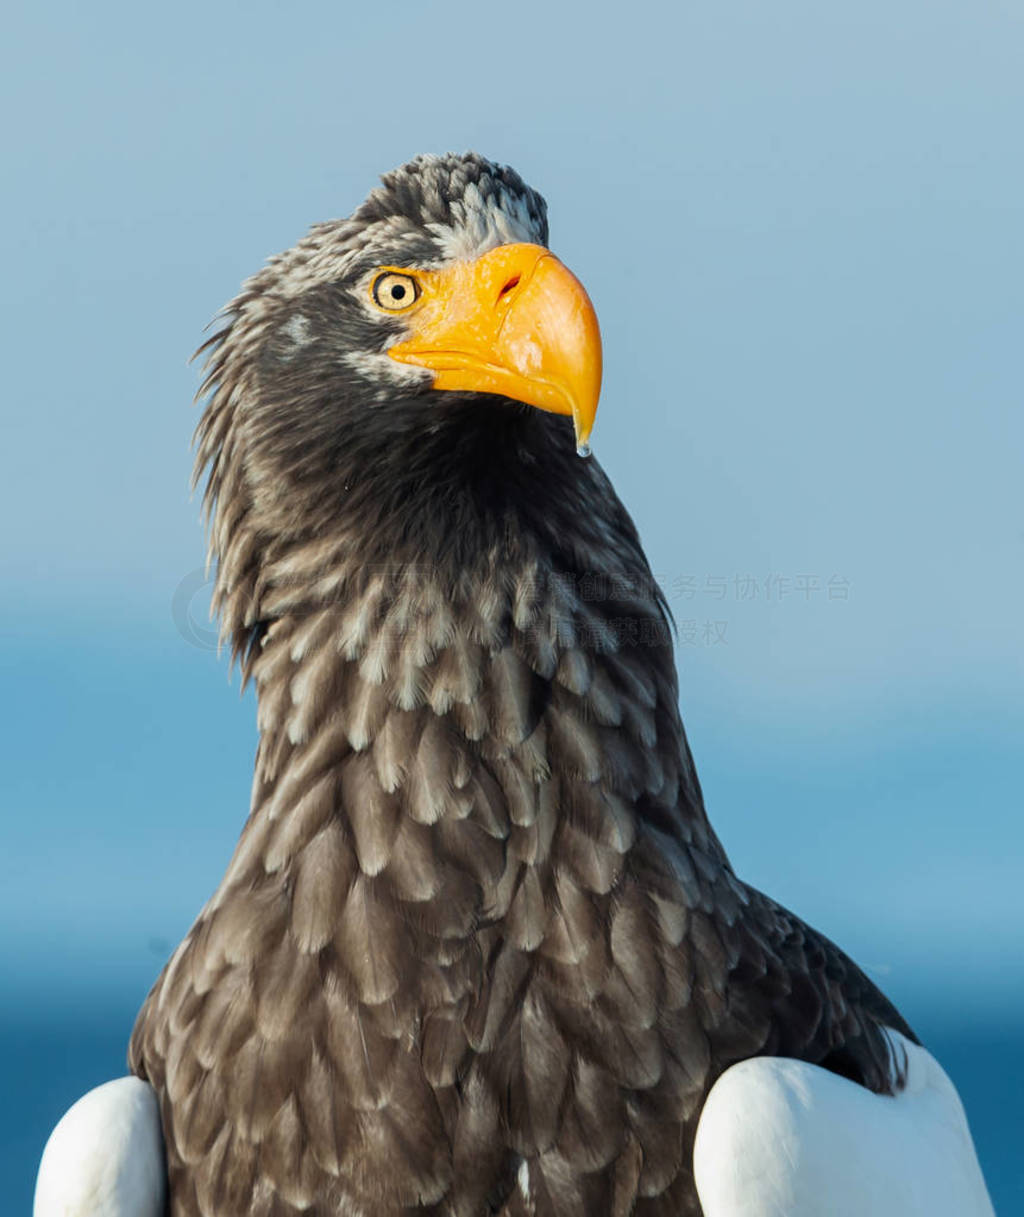 s sea eagle. Scientific name: Haliaeetus pelagicus.